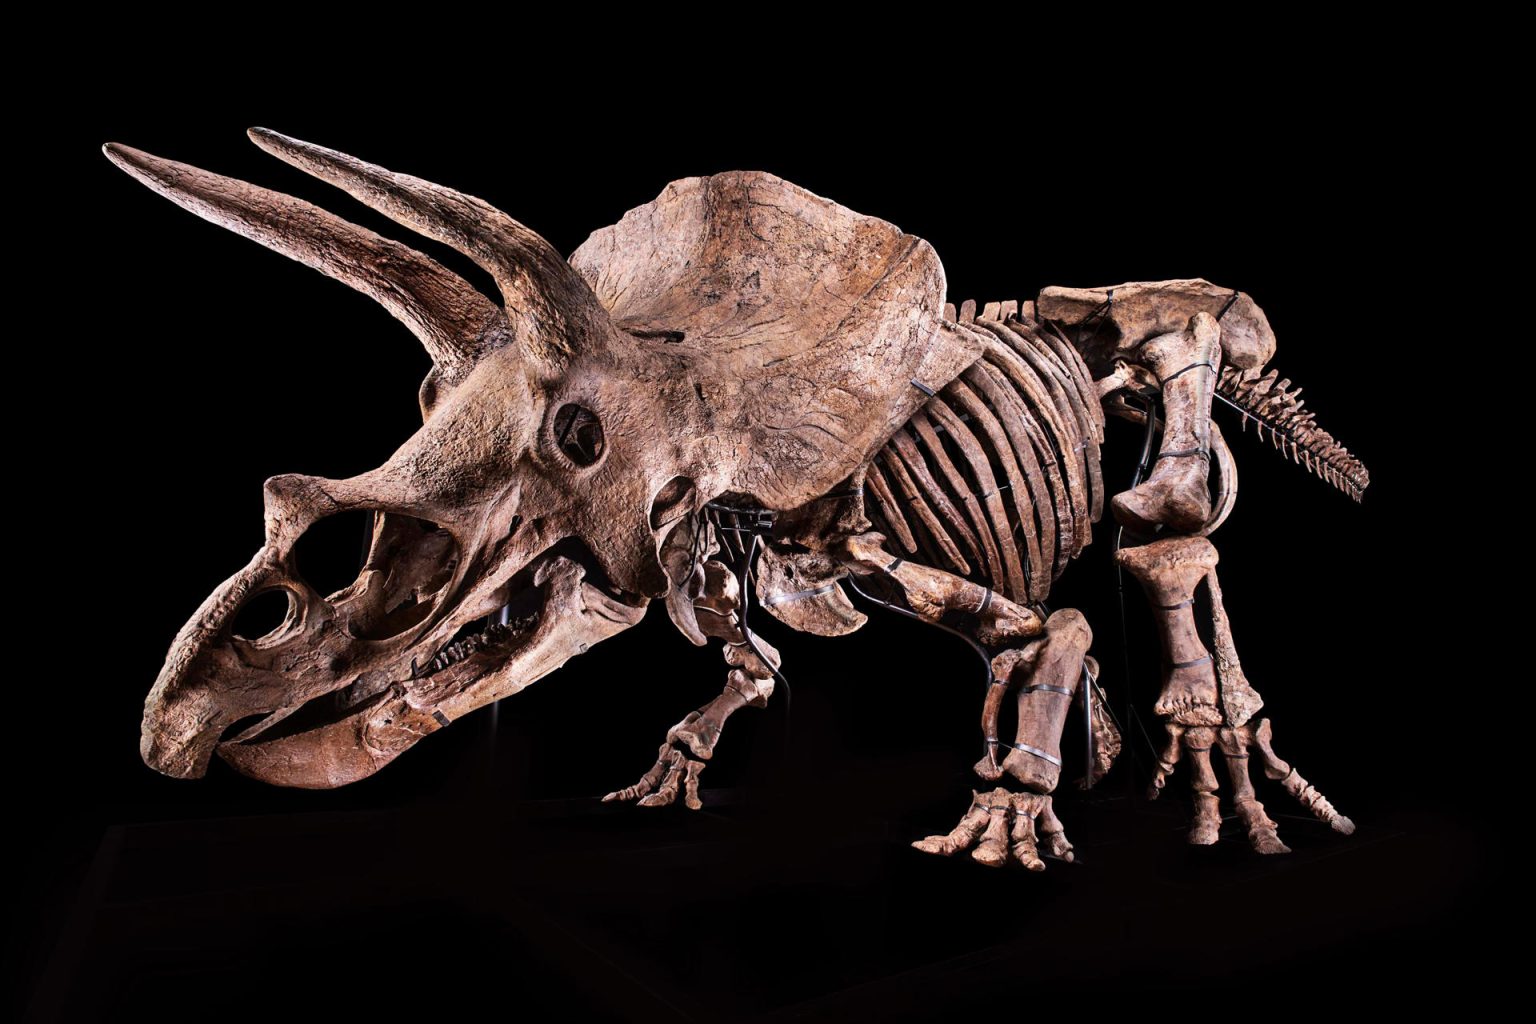 Fotografía cedida por el Glazer Children's Museum donde se muestra un esqueleto de un ejemplar de Triceratops, apodado "Big John", en Tampa (Estados Unidos). EFE/ Glazer Children's Museum / SOLO USO EDITORIAL/ SOLO DISPONIBLE PARA ILUSTRAR LA NOTICIA QUE ACOMPAÑA (CRÉDITO OBLIGATORIO)